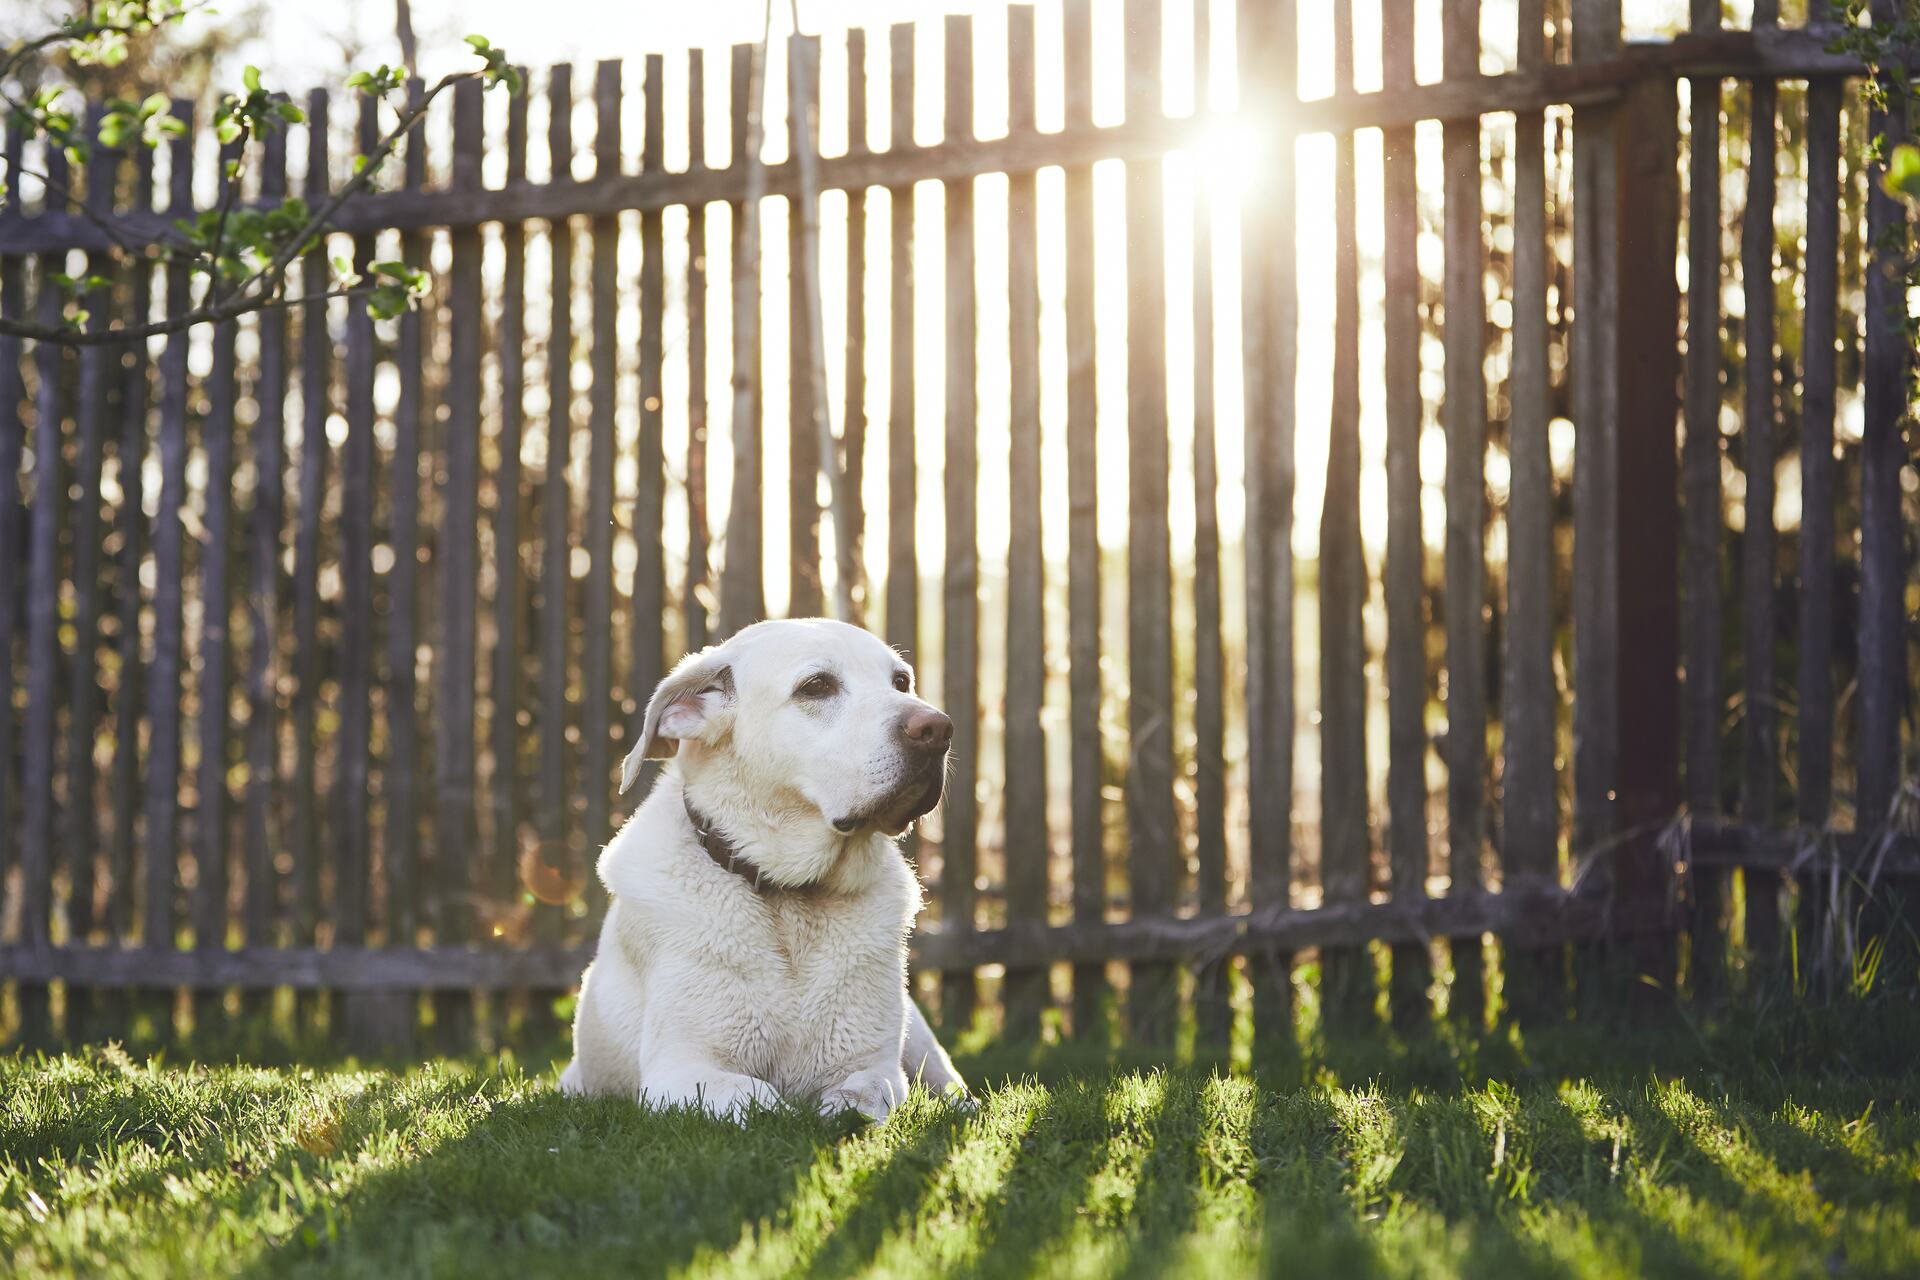 A dog sitting behind a garden fence